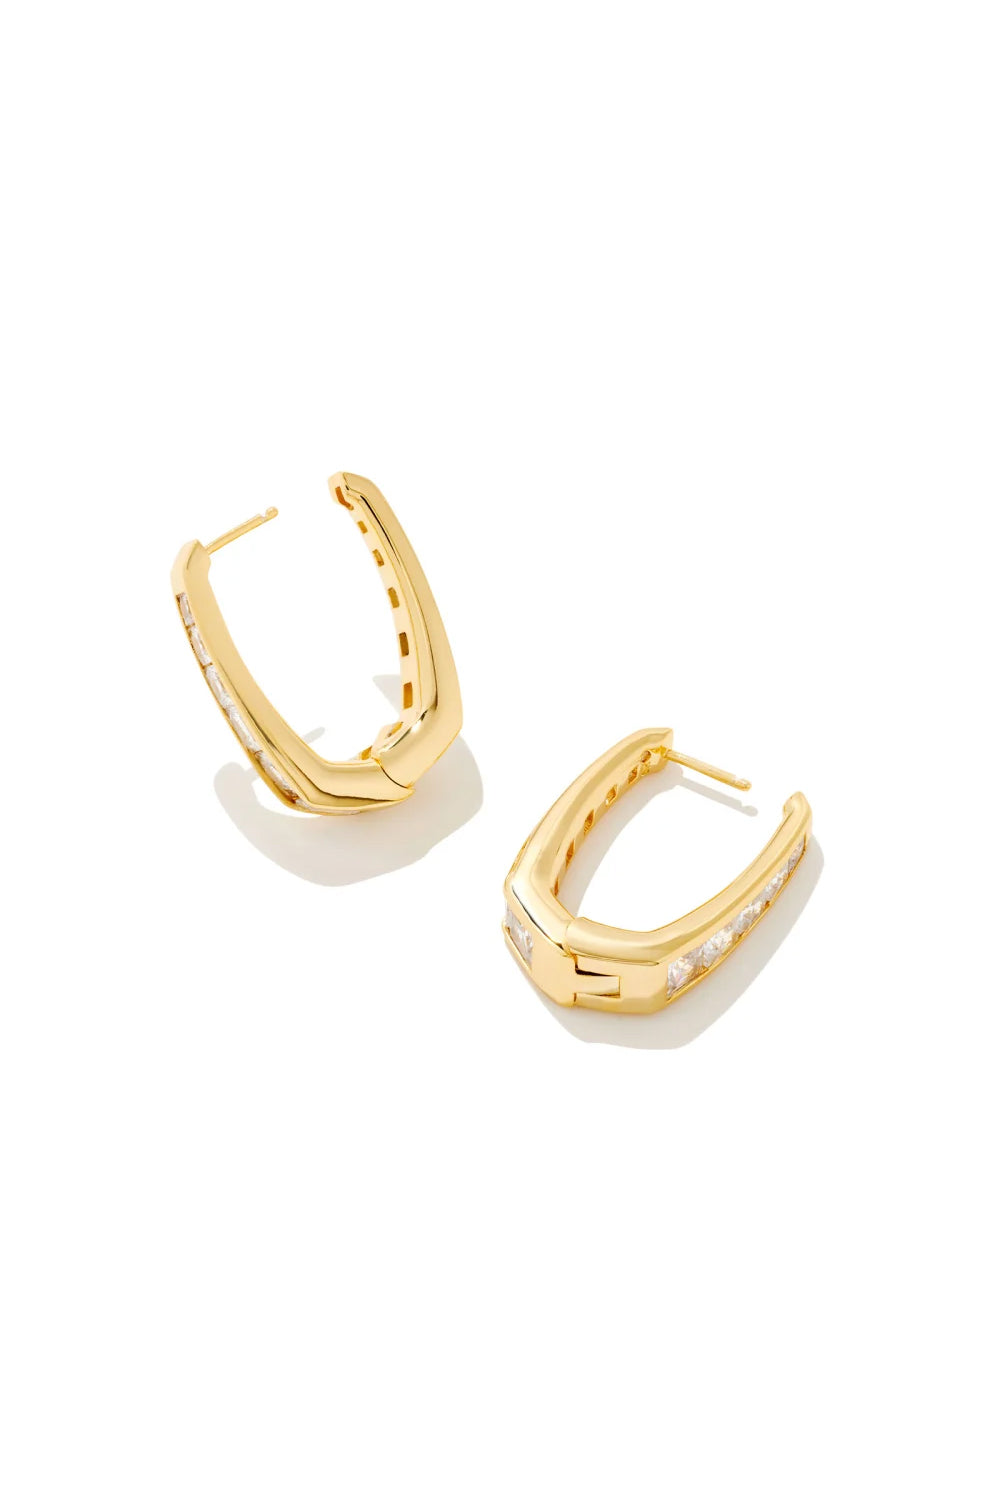 Kendra Scott: Parker Gold Hoop Earrings - White Crystal | Makk Fashions